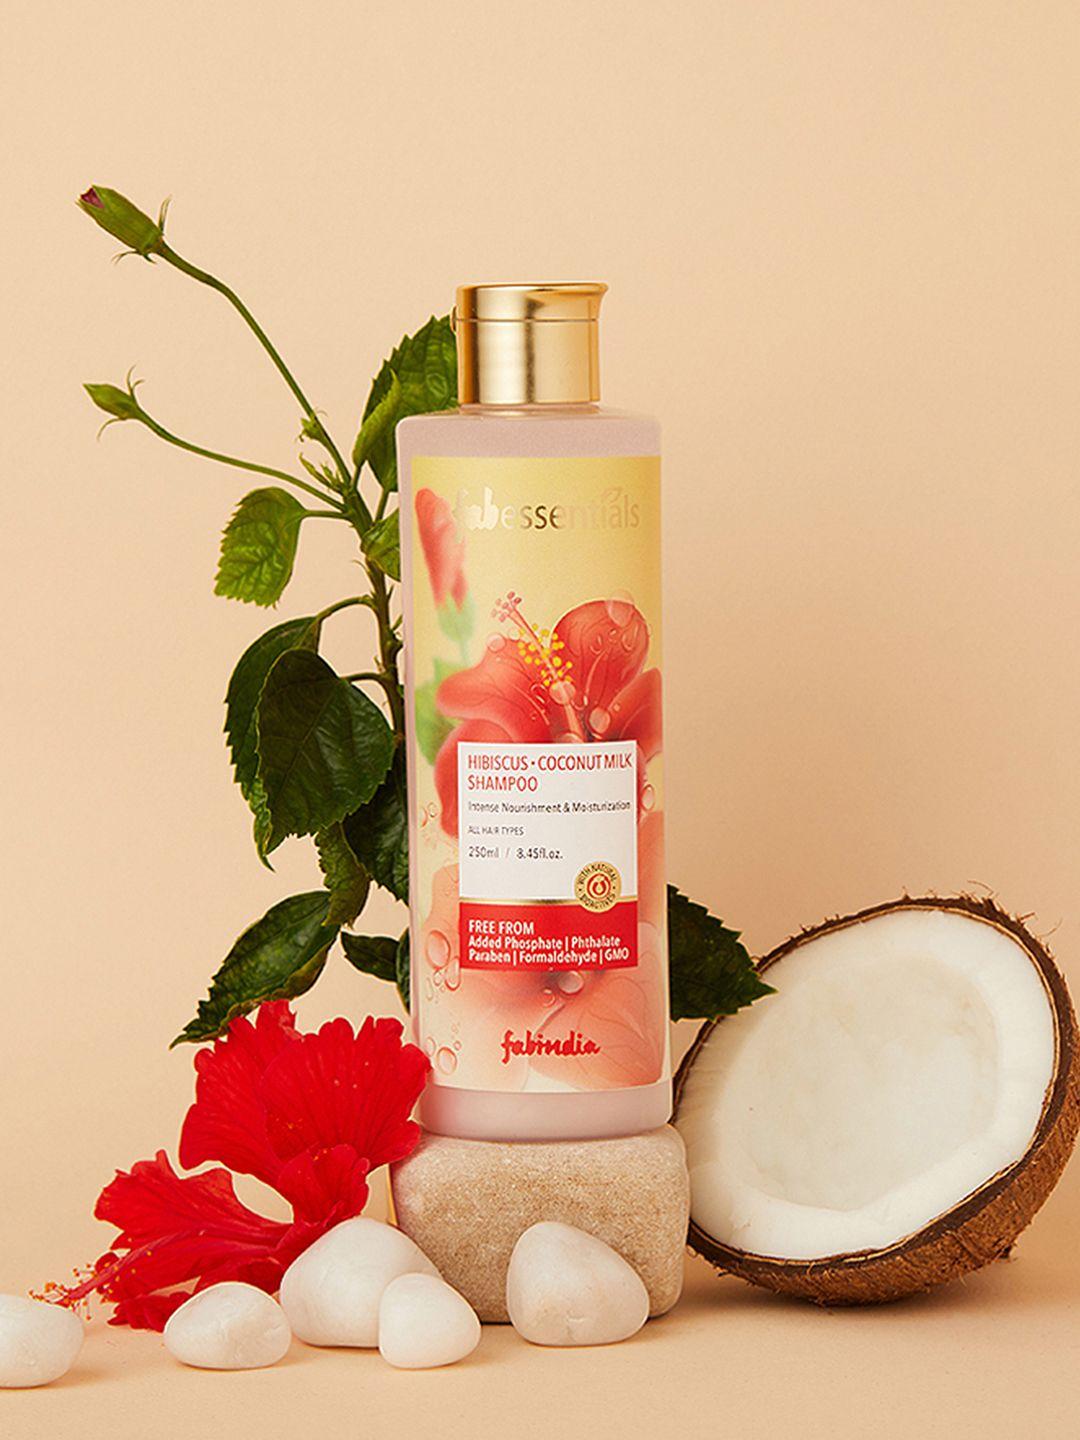 fabindia-fabessentials-hibiscus-coconut-milk-intense-nourishment-shampoo---250ml